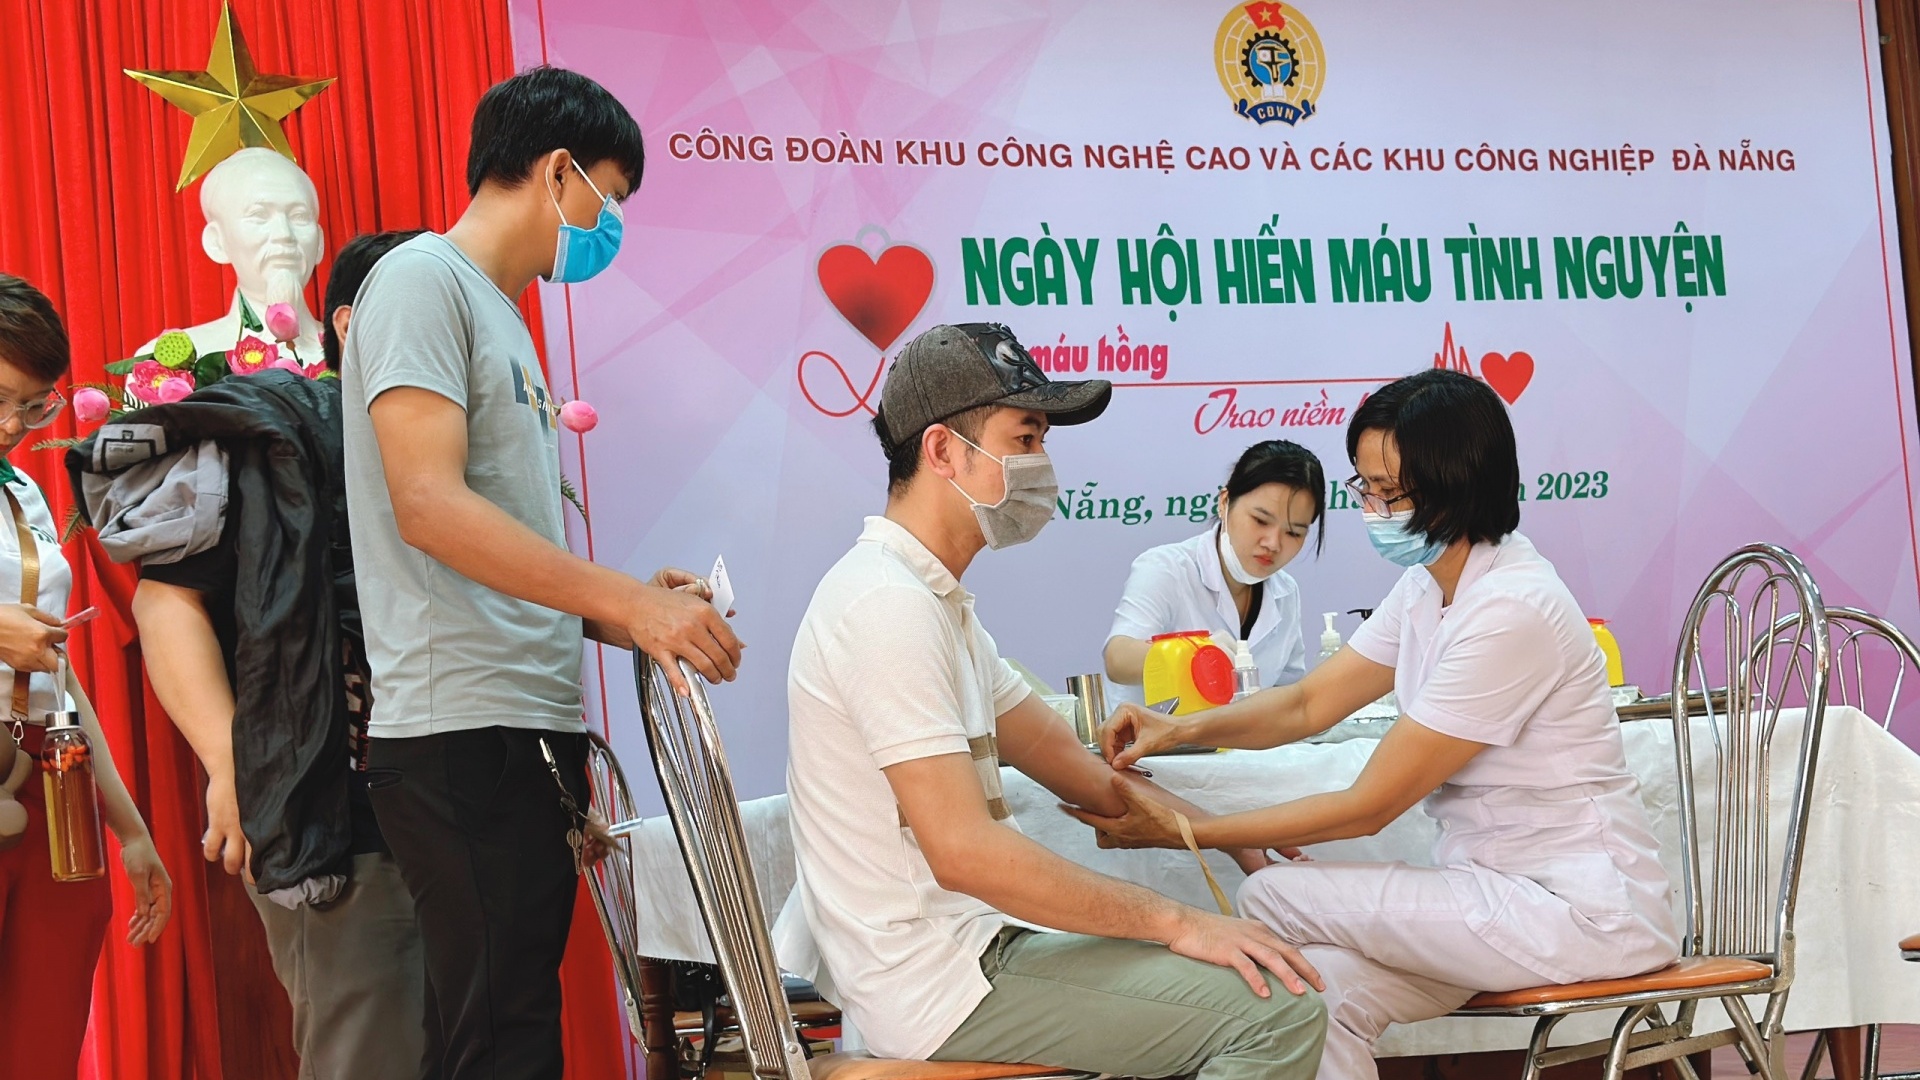 Đà Nẵng: Gần 500 đoàn viên, NLĐ các khu công nghiệp tham gia hiến máu tình nguyện